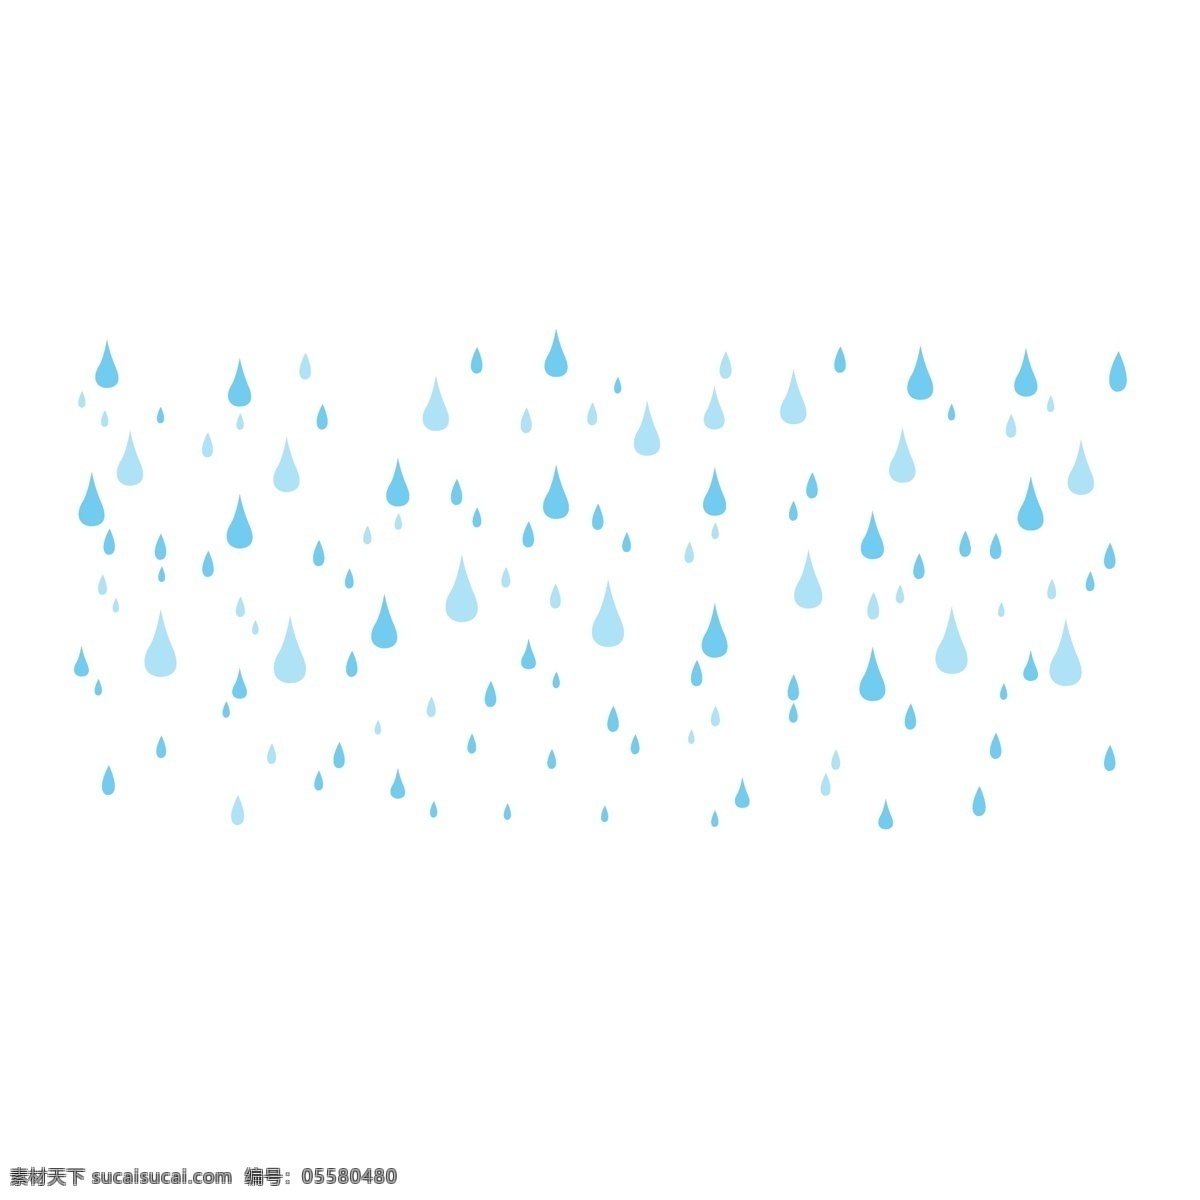 矢量 手绘 卡通 雨滴 背景 元素 矢量图 手绘图 简单 创意 可爱 彩色 扁平 蓝色